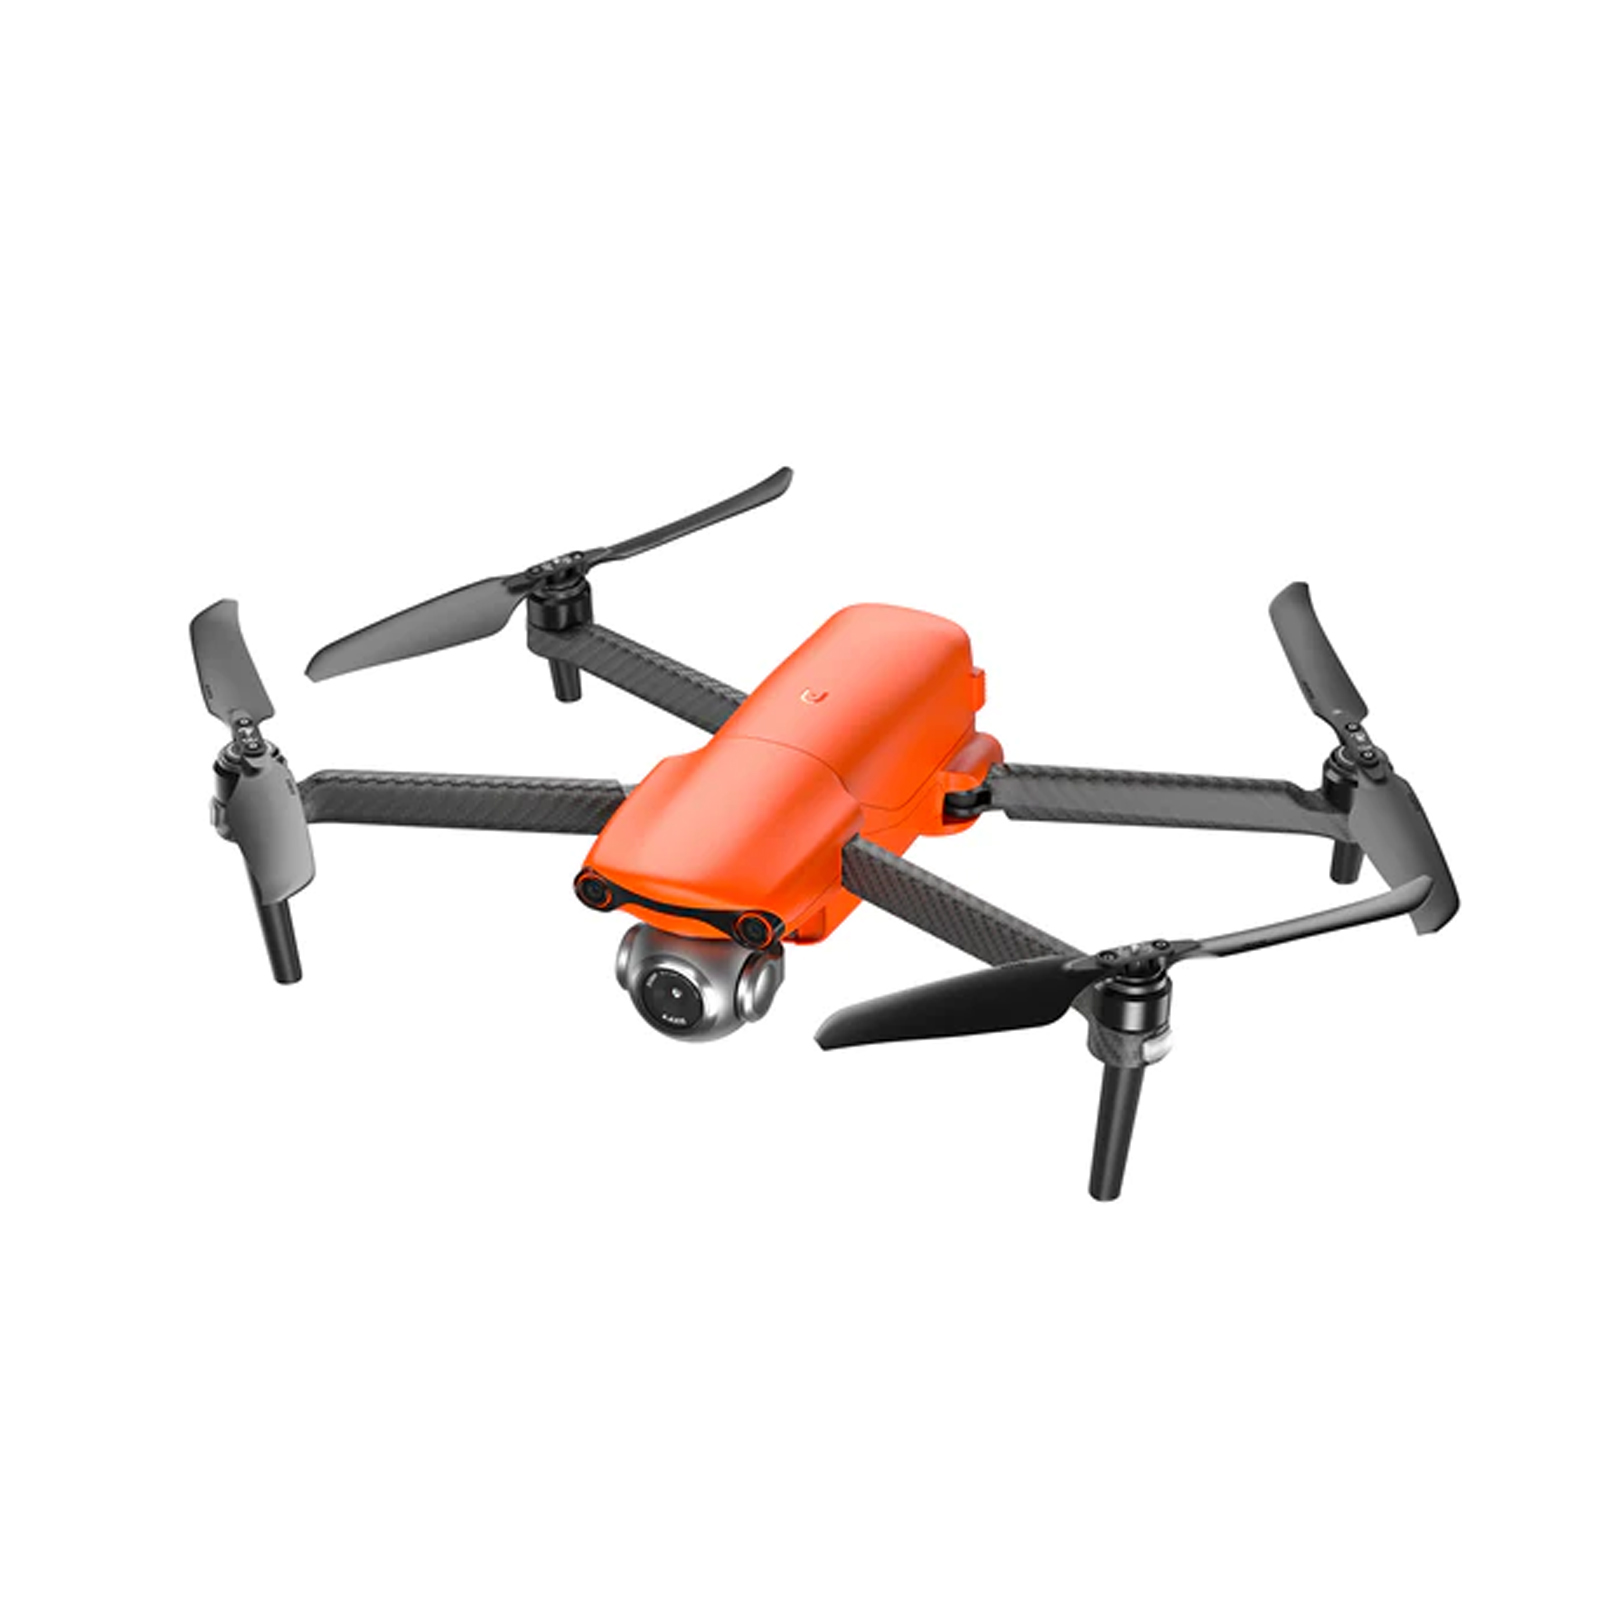 Ce drone avec caméra 4K ultra HD voit son prix réduire de 40% sur